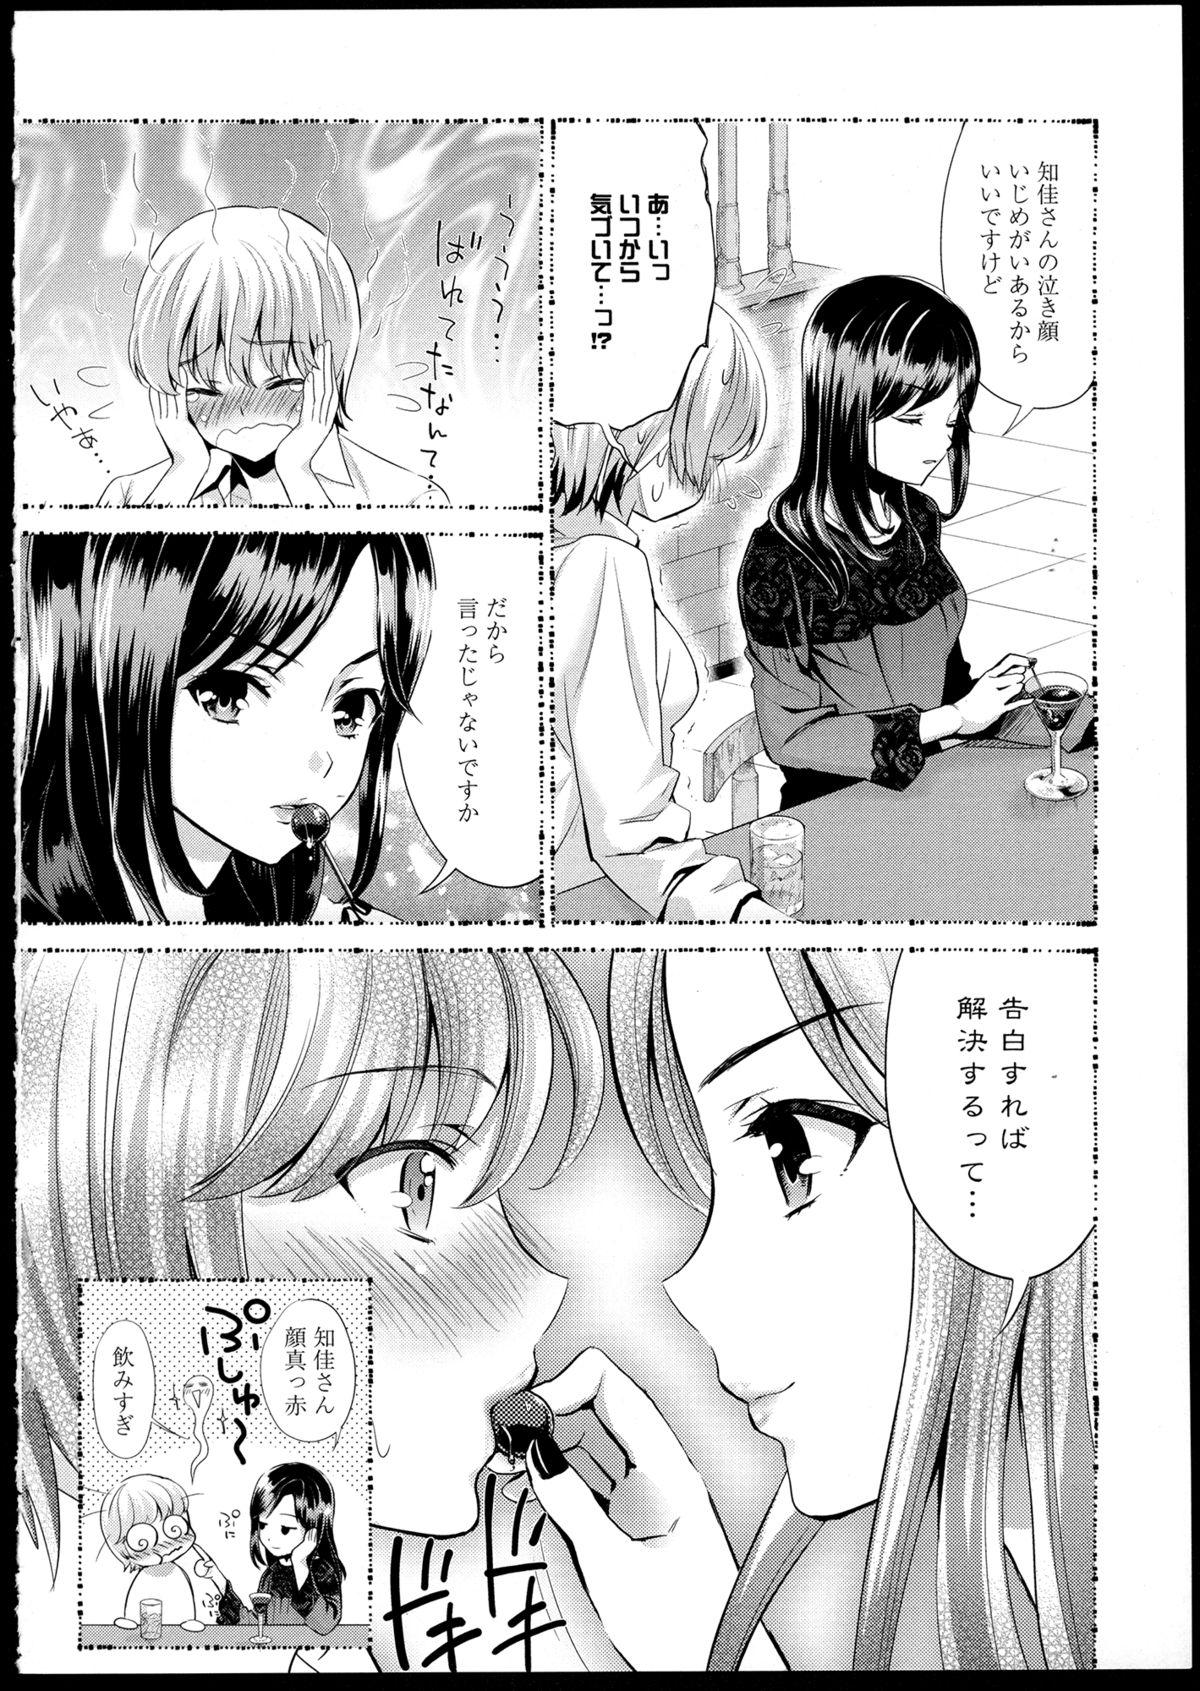 Smoking Aya Yuri Vol. 1 First - Page 10